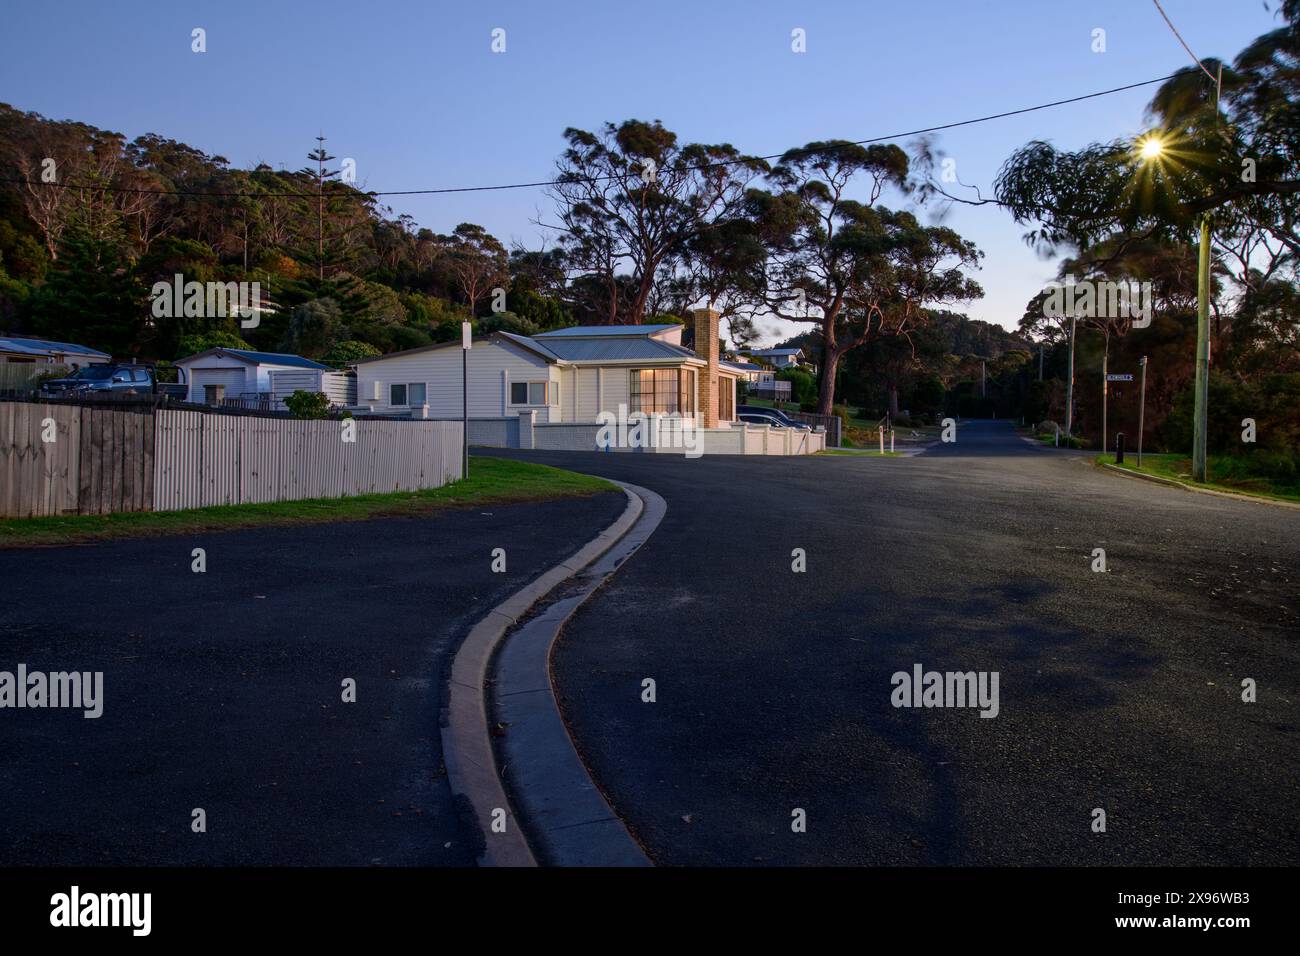 Australia, Tasmania, East Coast, Bicheno, house, Stock Photo